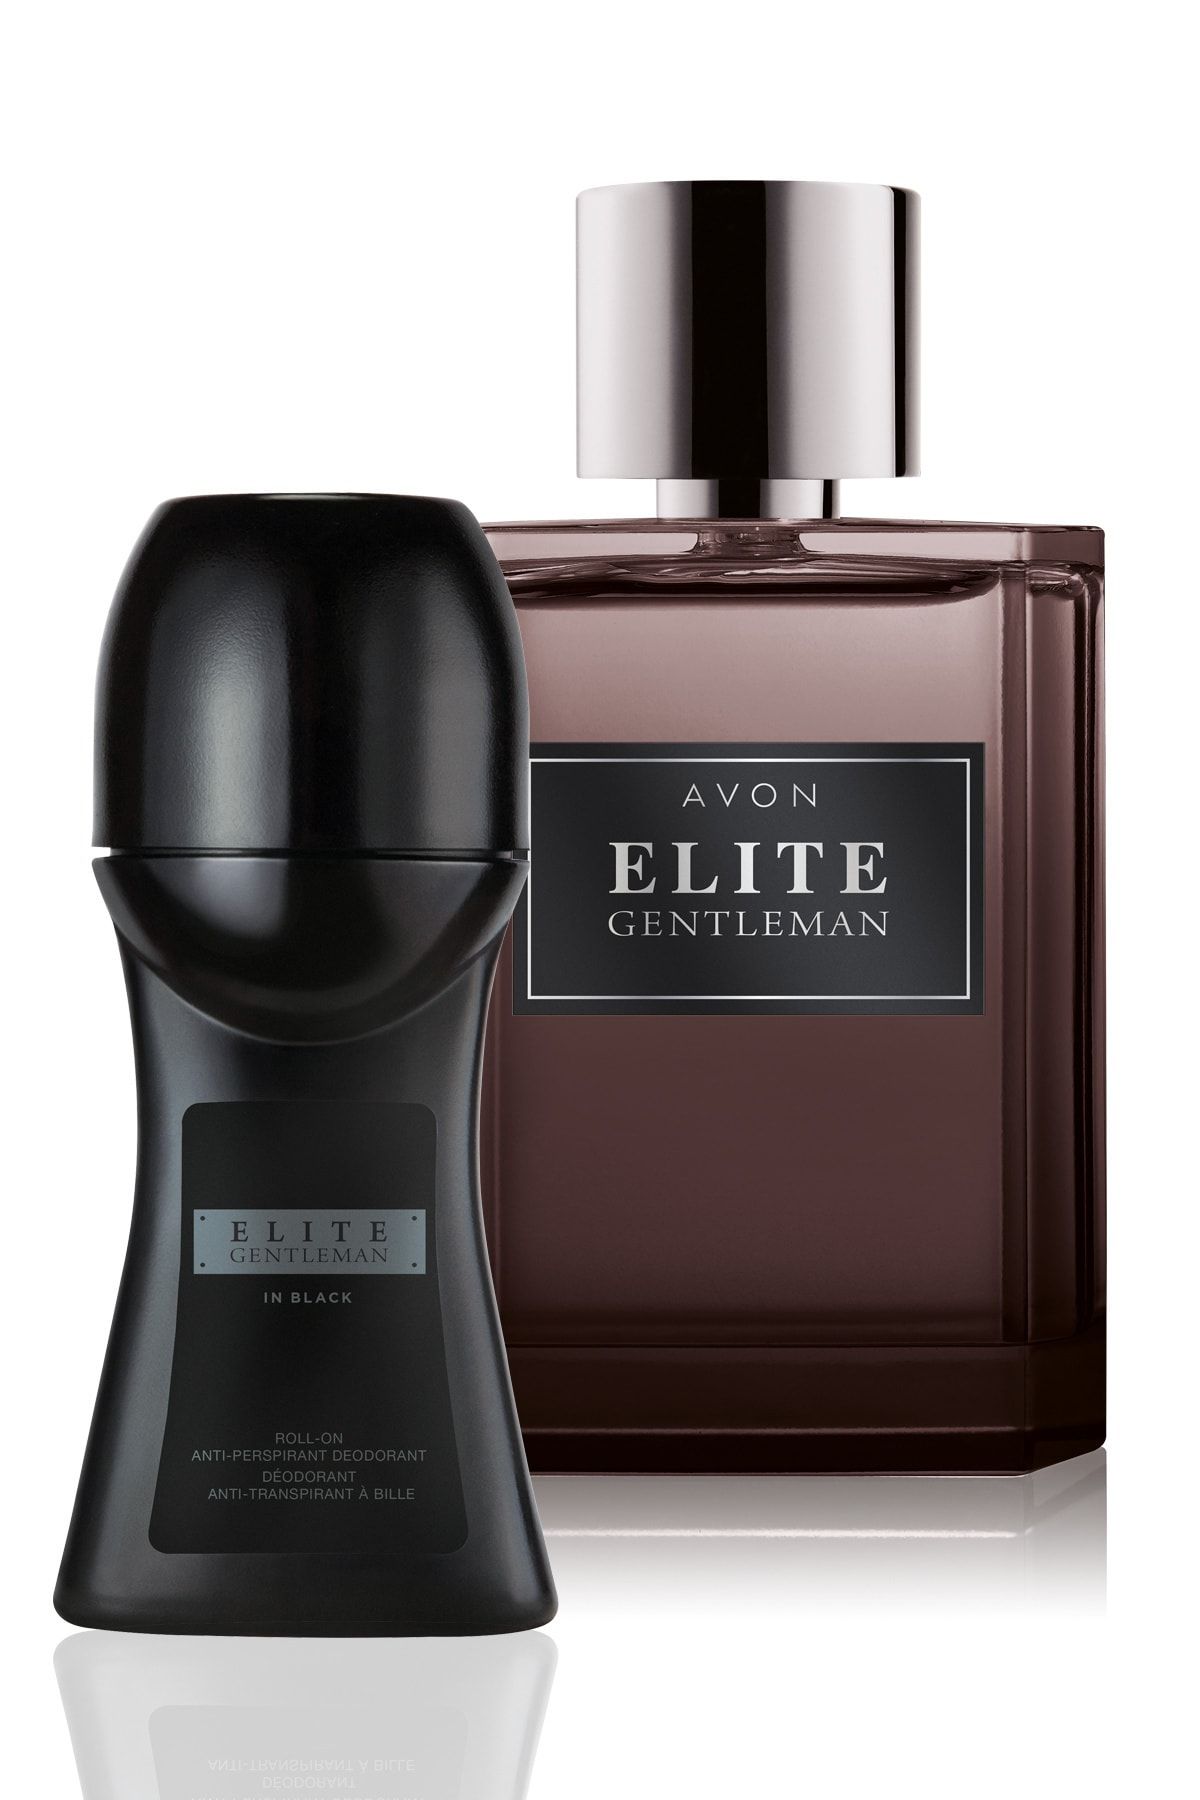 Avon elite. Avon Elite Gentleman. Avon Elite Gentleman дезодорант. Avon Elite Gentleman in Black. Elite Gentleman дезодорант.